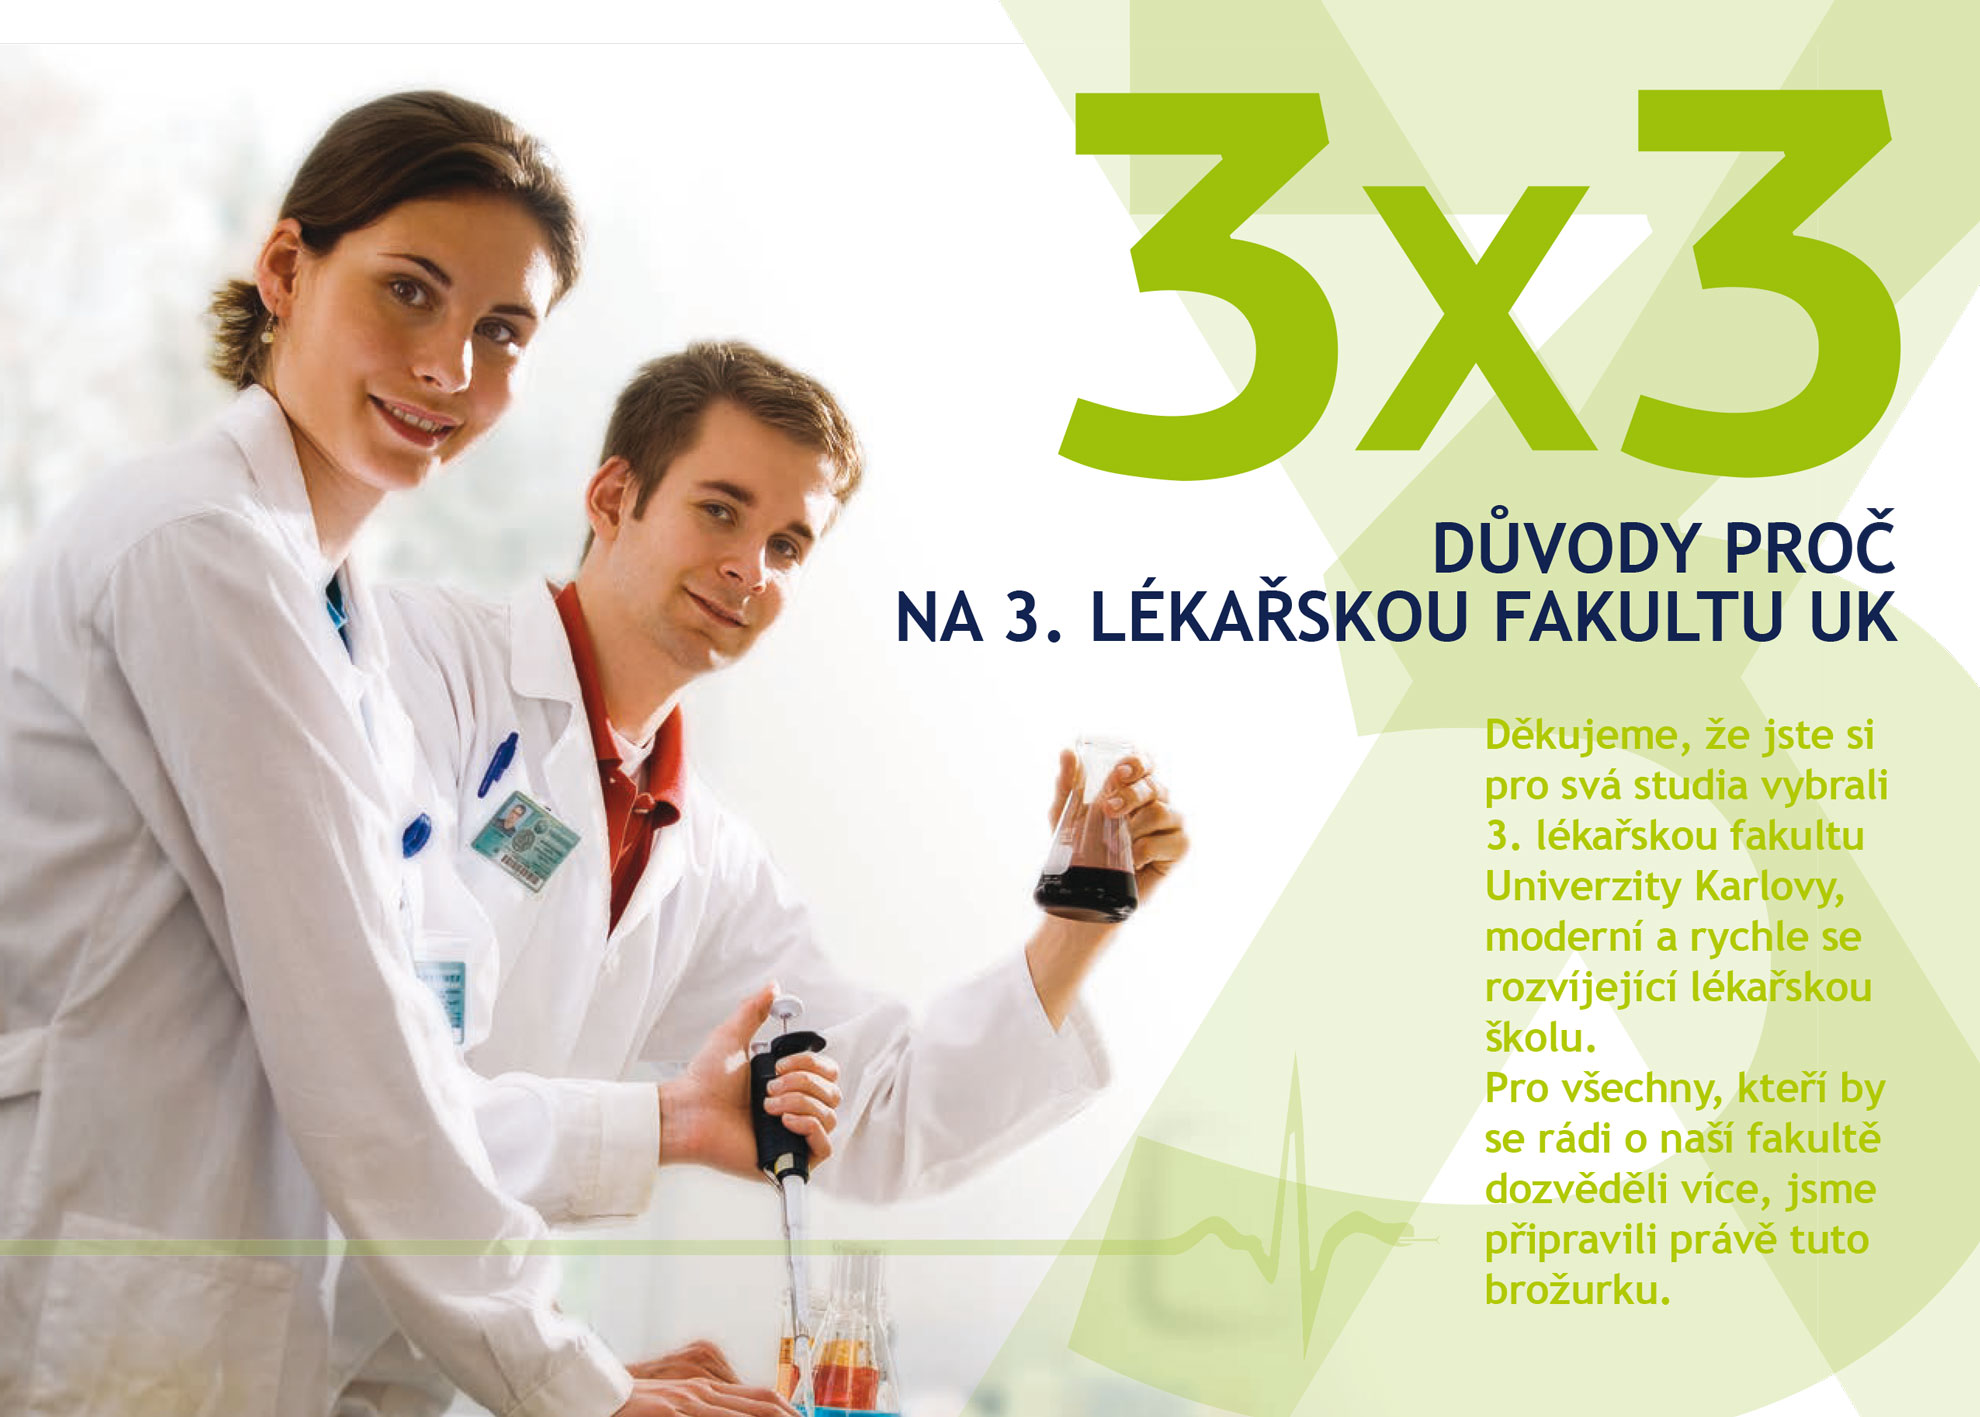 Informační leták 3x3 důvody proč studovat 3. lékařskou fakultu